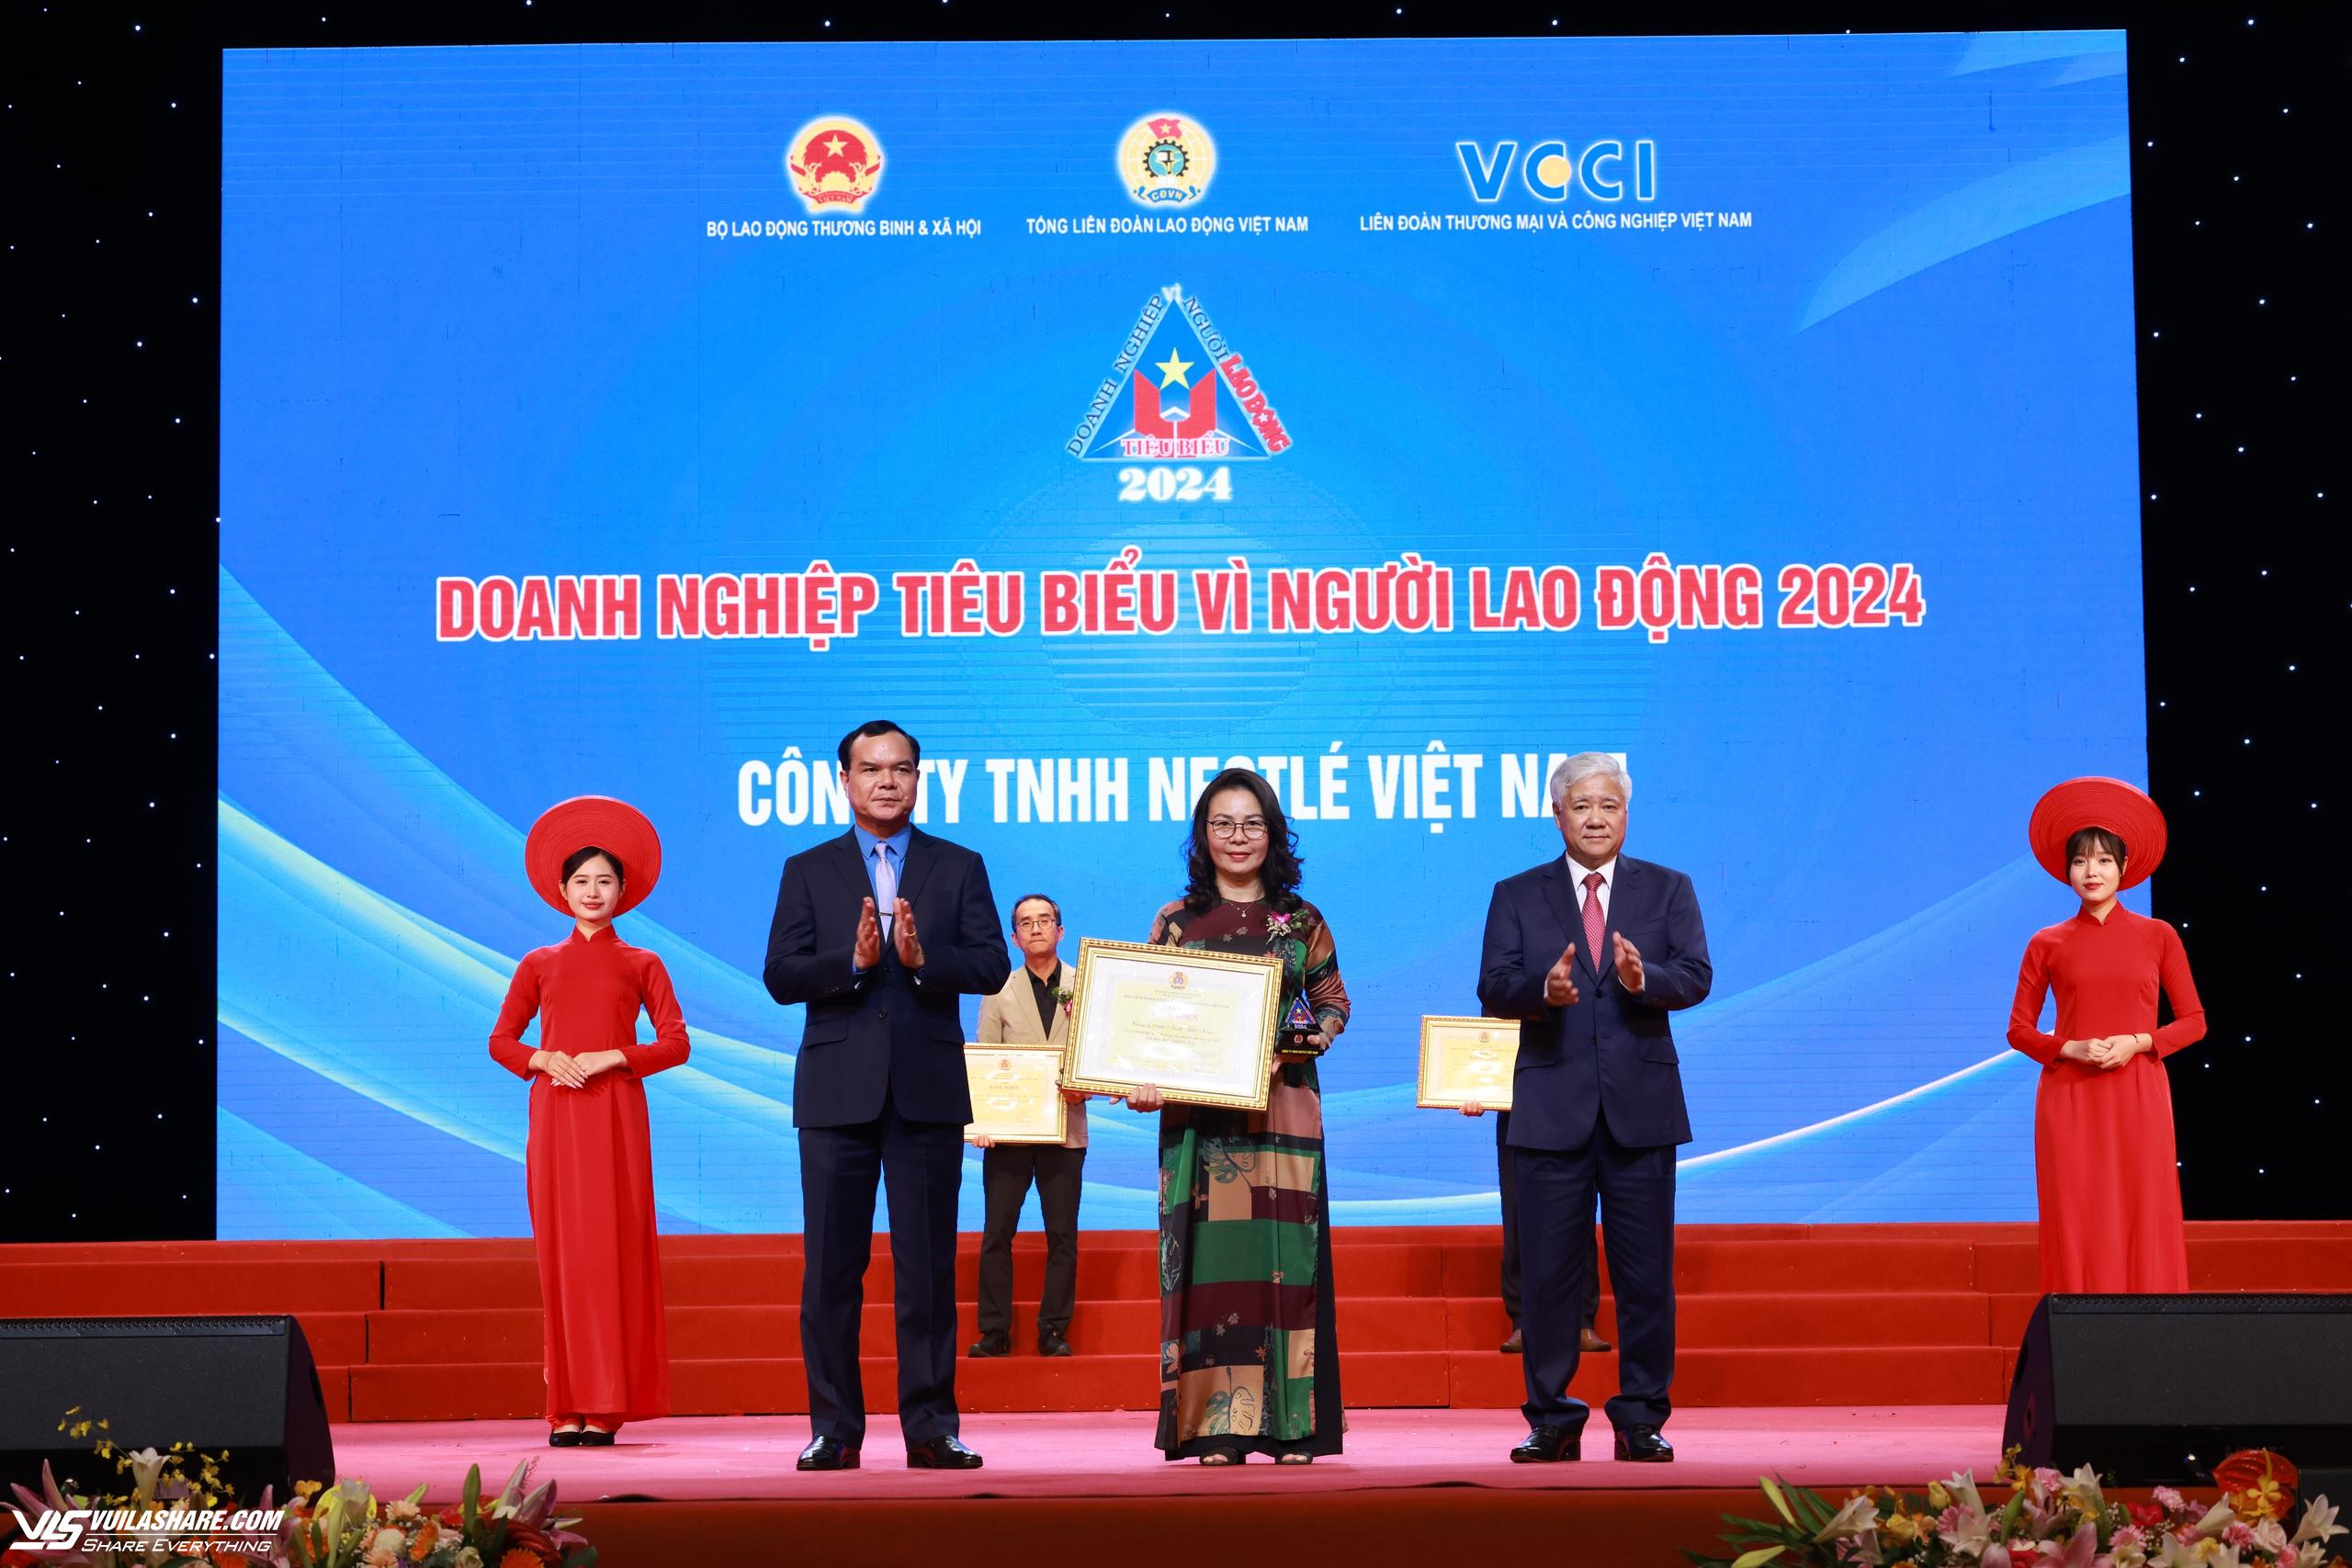 Nestlé Việt Nam được vinh danh 'Doanh nghiệp tiêu biểu vì người lao động'- Ảnh 1.